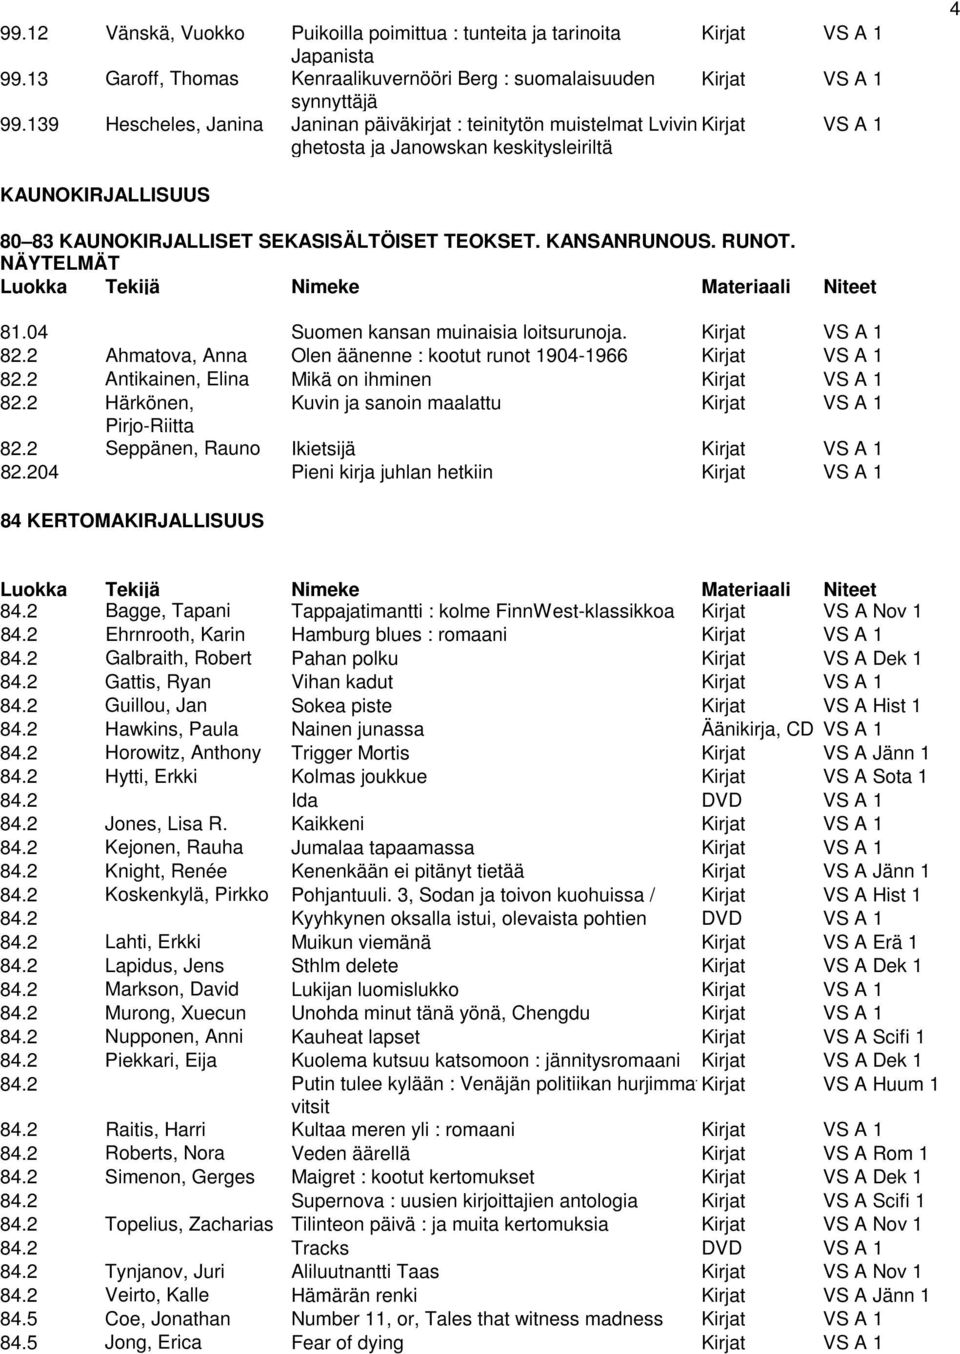 KANSANRUNOUS. RUNOT. NÄYTELMÄT 81.04 Suomen kansan muinaisia loitsurunoja. Kirjat VS A 1 82.2 Ahmatova, Anna Olen äänenne : kootut runot 1904-1966 Kirjat VS A 1 82.